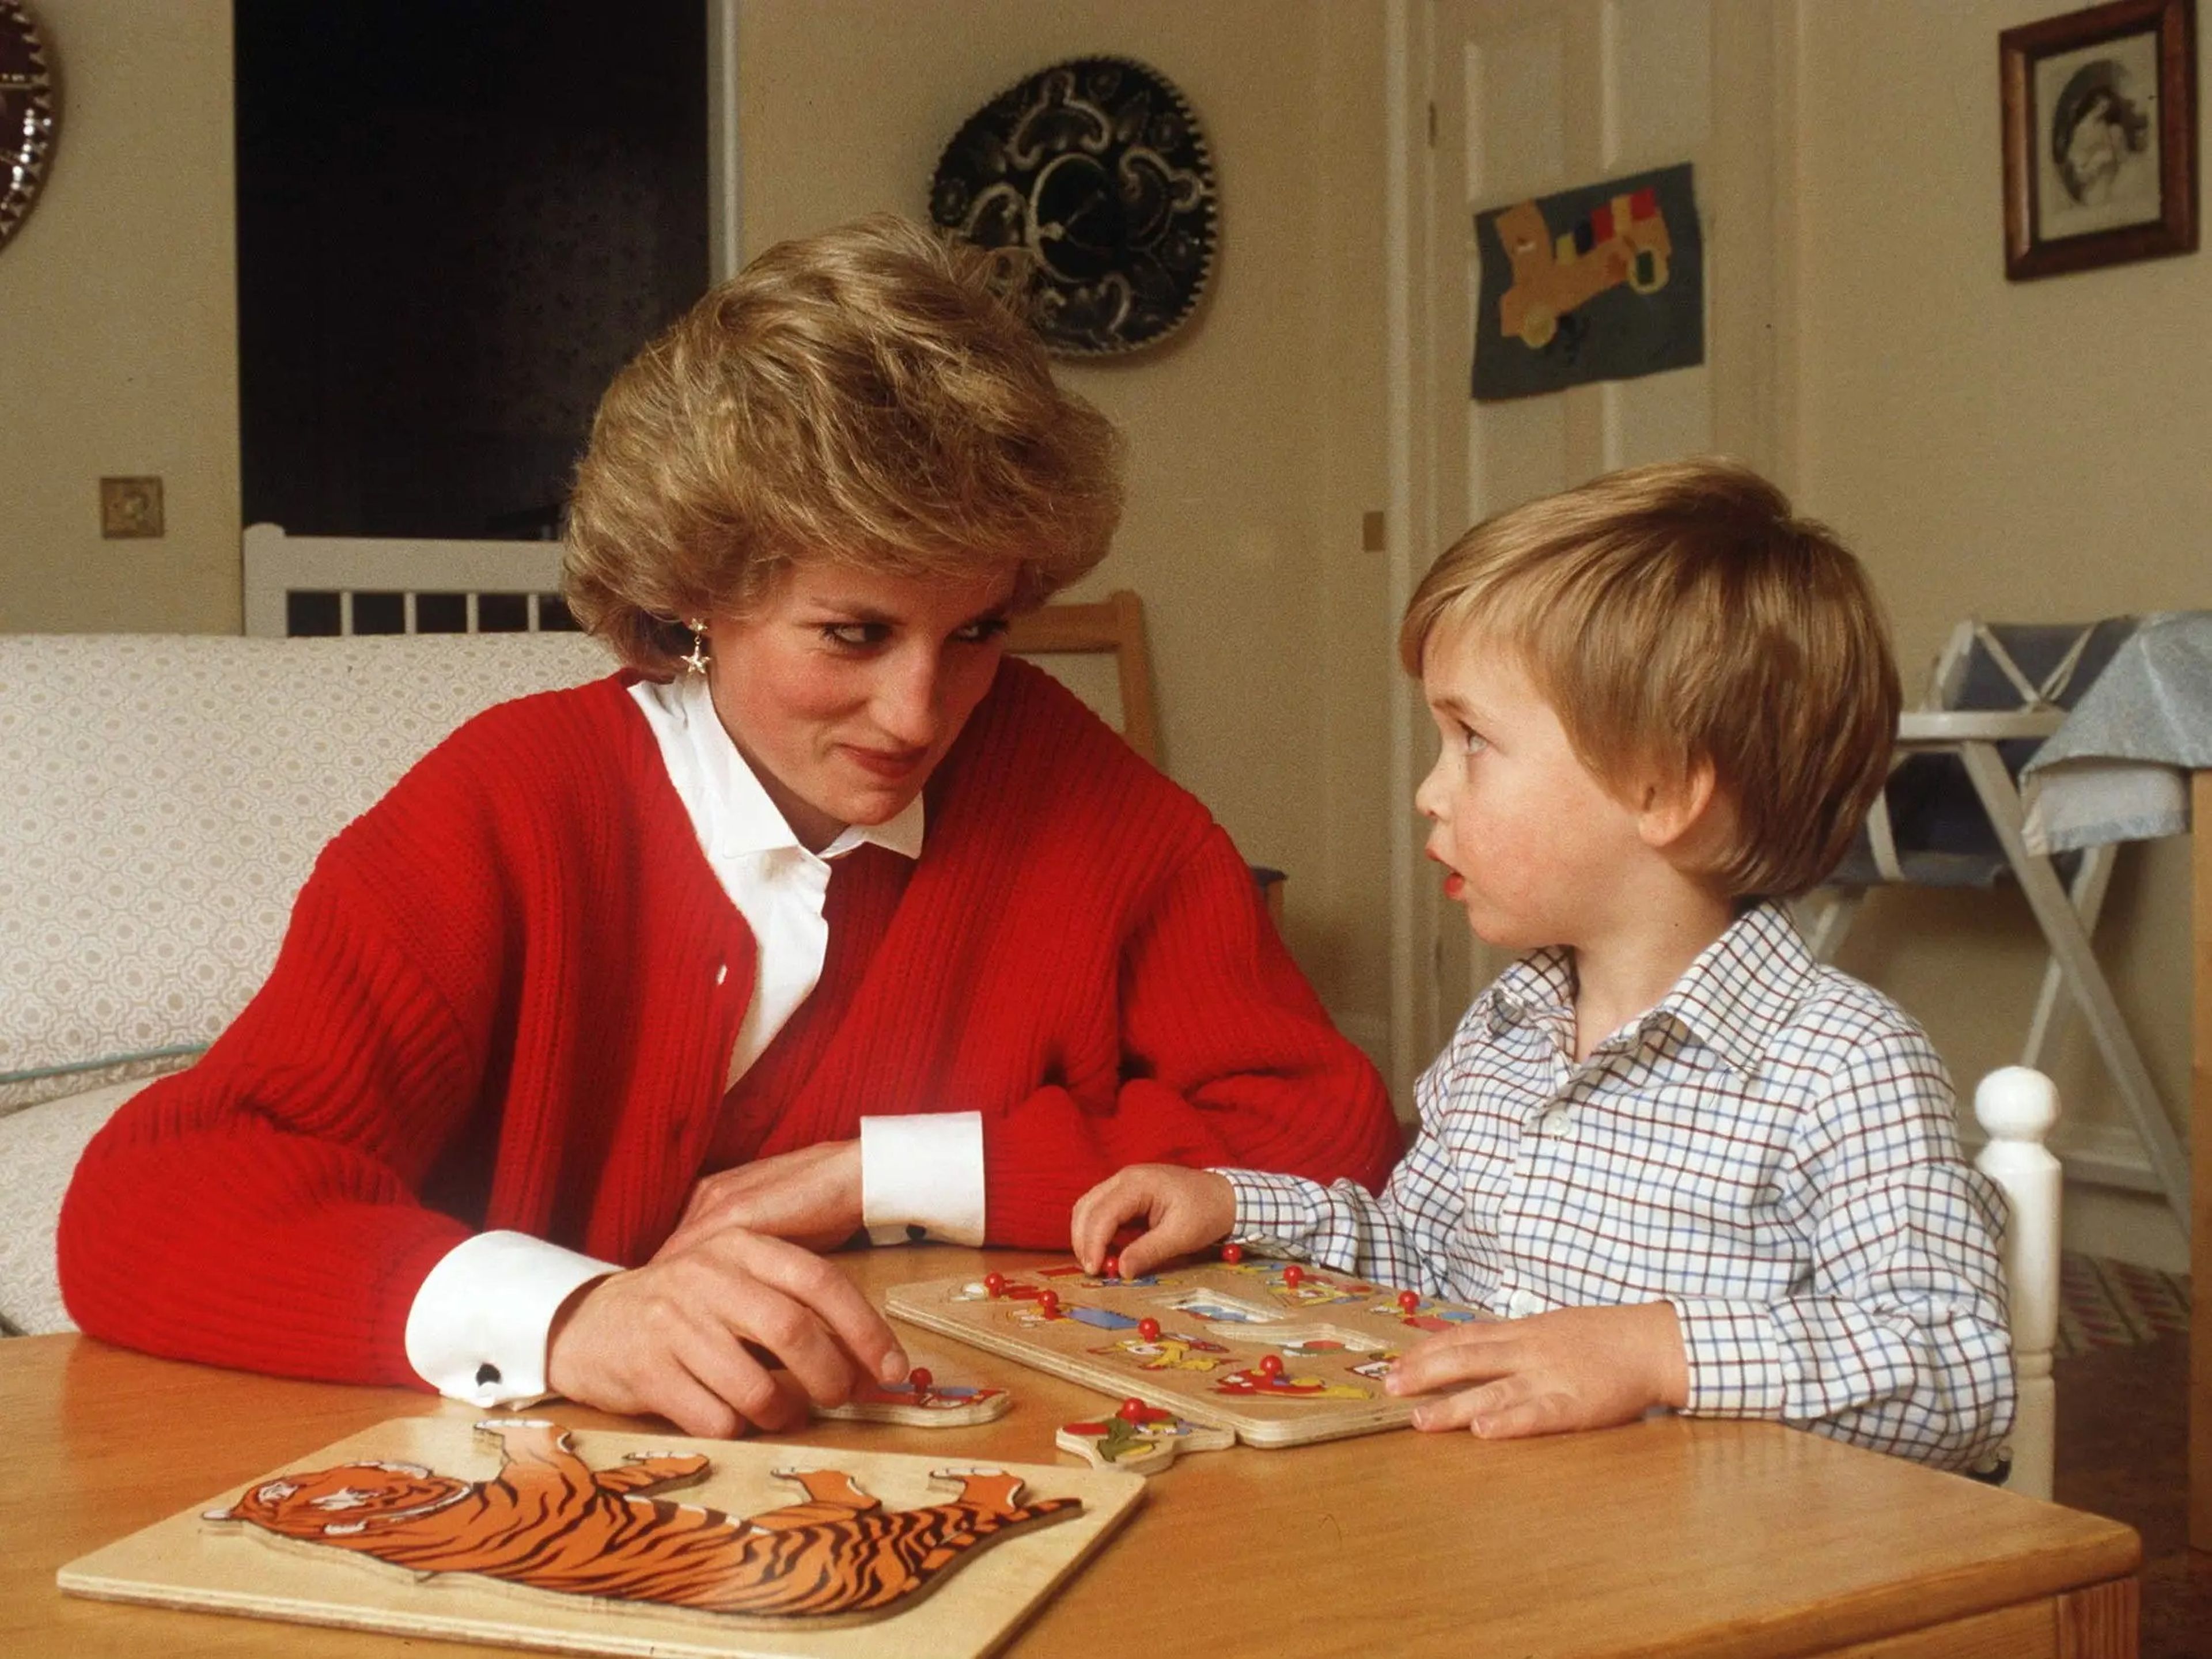 La princesa Diana ayudando al príncipe William con un puzzle en el palacio de Kensington en 1985. / Tim Graham Photo Library/Getty Images